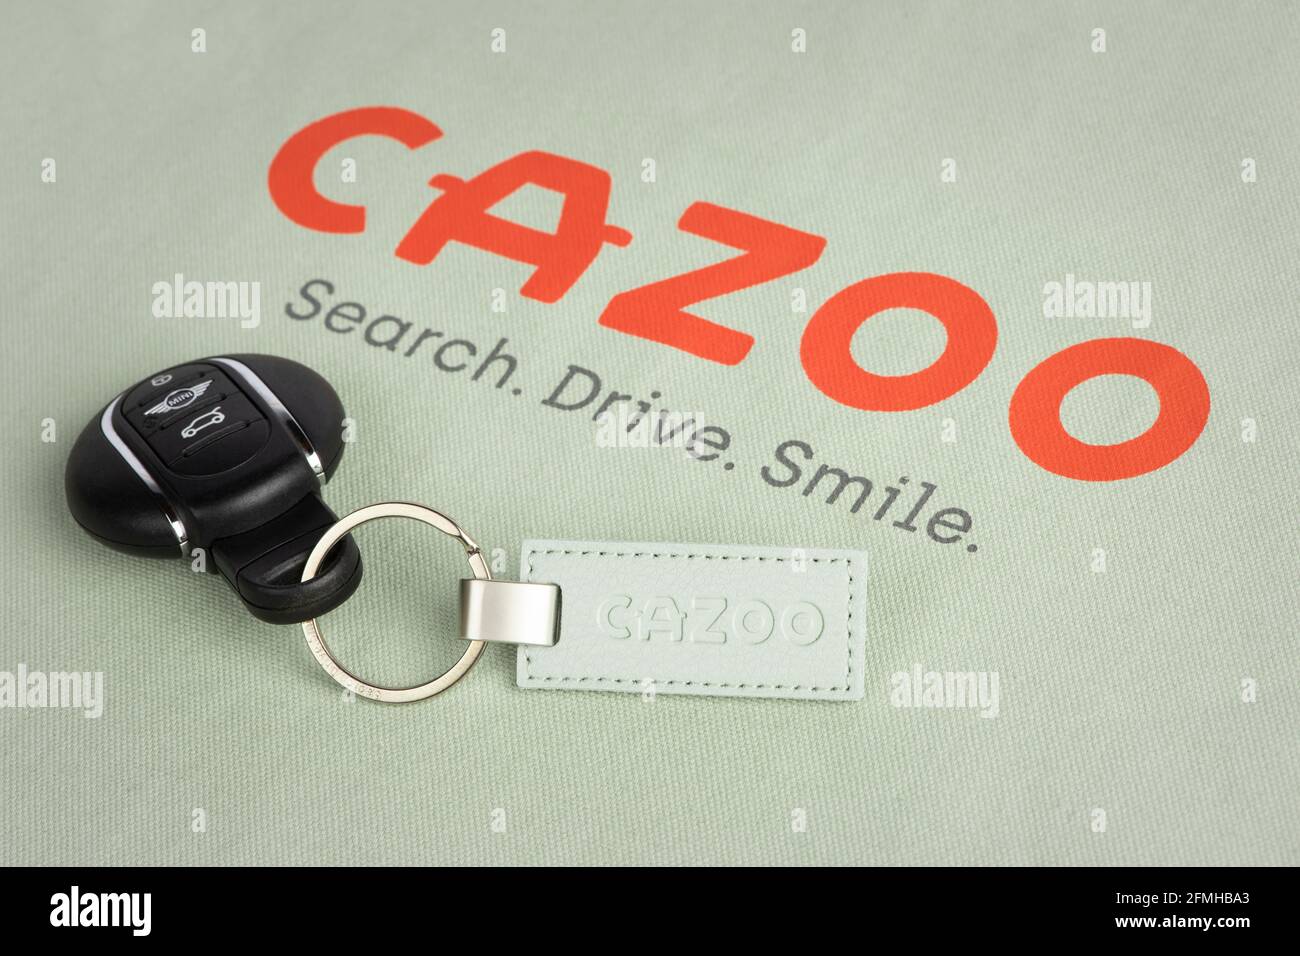 Il logo del rivenditore online di automobili Cazoo visto su uno dei sacchetti di borsa e portachiavi dell'azienda. Foto Stock